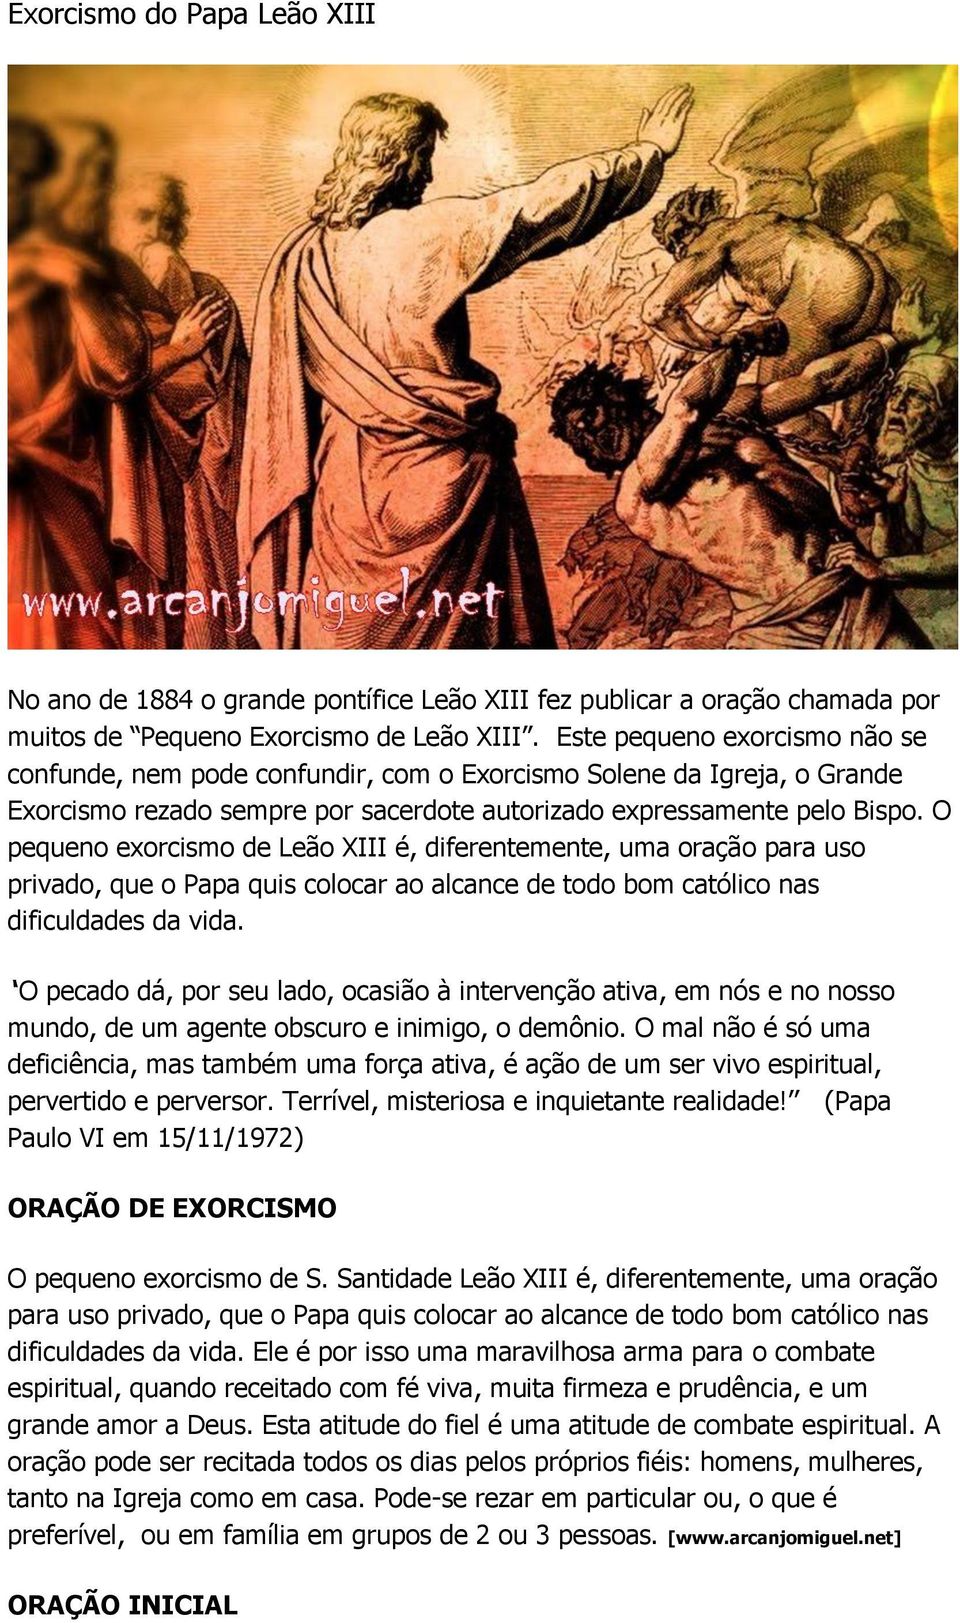 O pequeno exorcismo de Leão XIII é, diferentemente, uma oração para uso privado, que o Papa quis colocar ao alcance de todo bom católico nas dificuldades da vida.